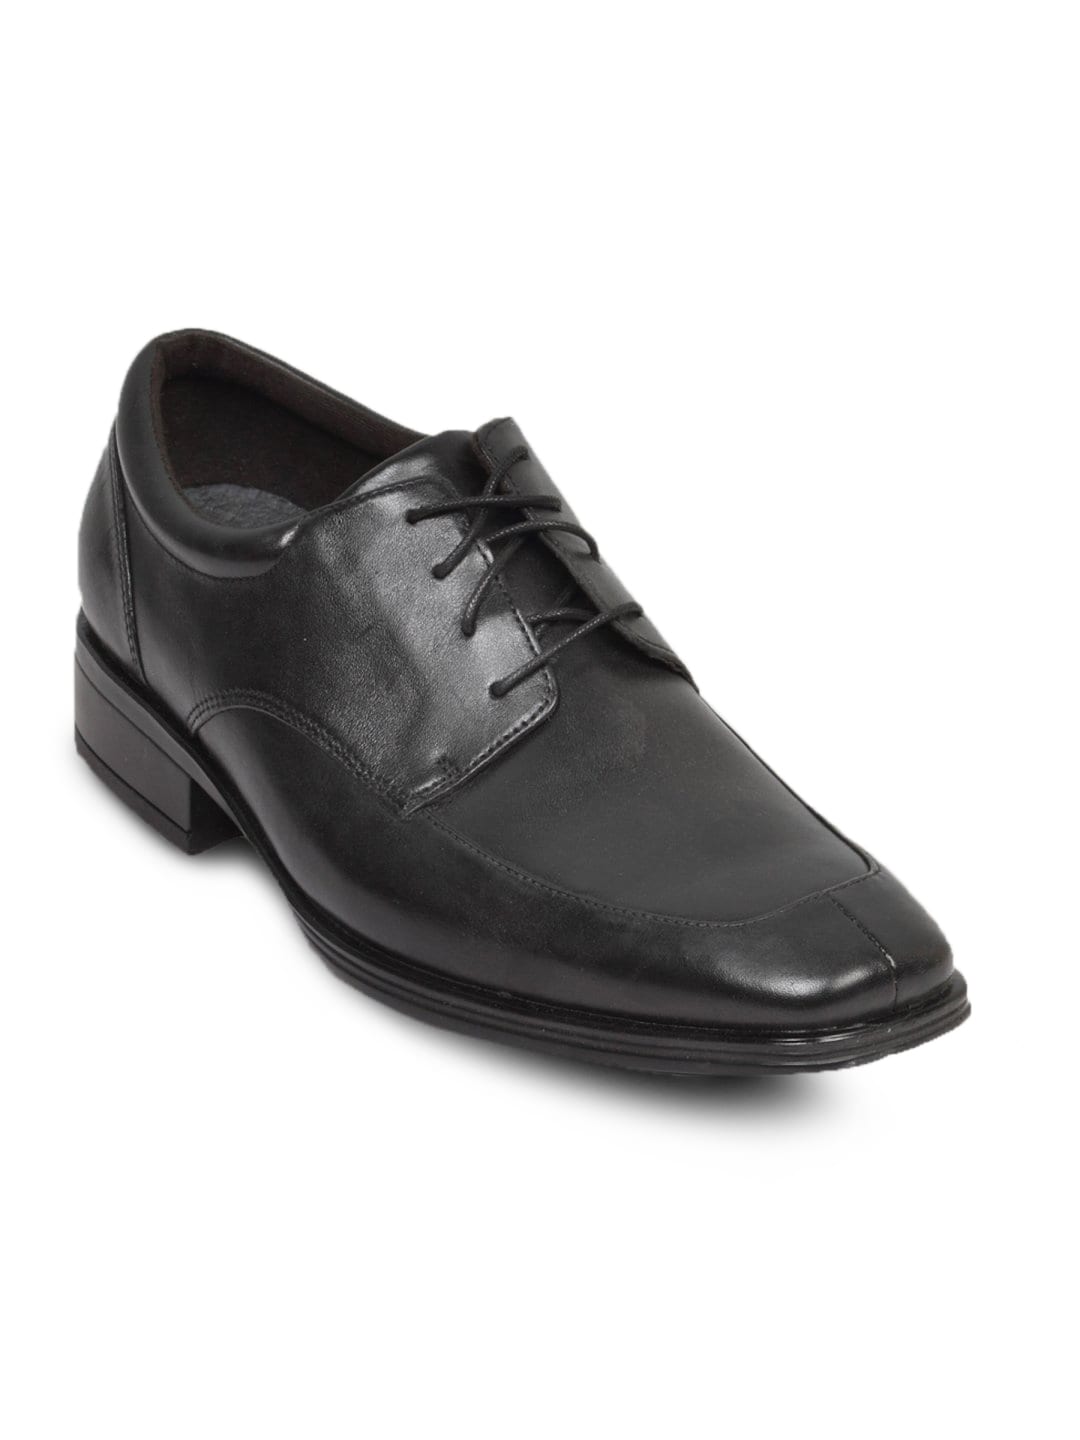 Rockport Men's Mubleno Black Shoe